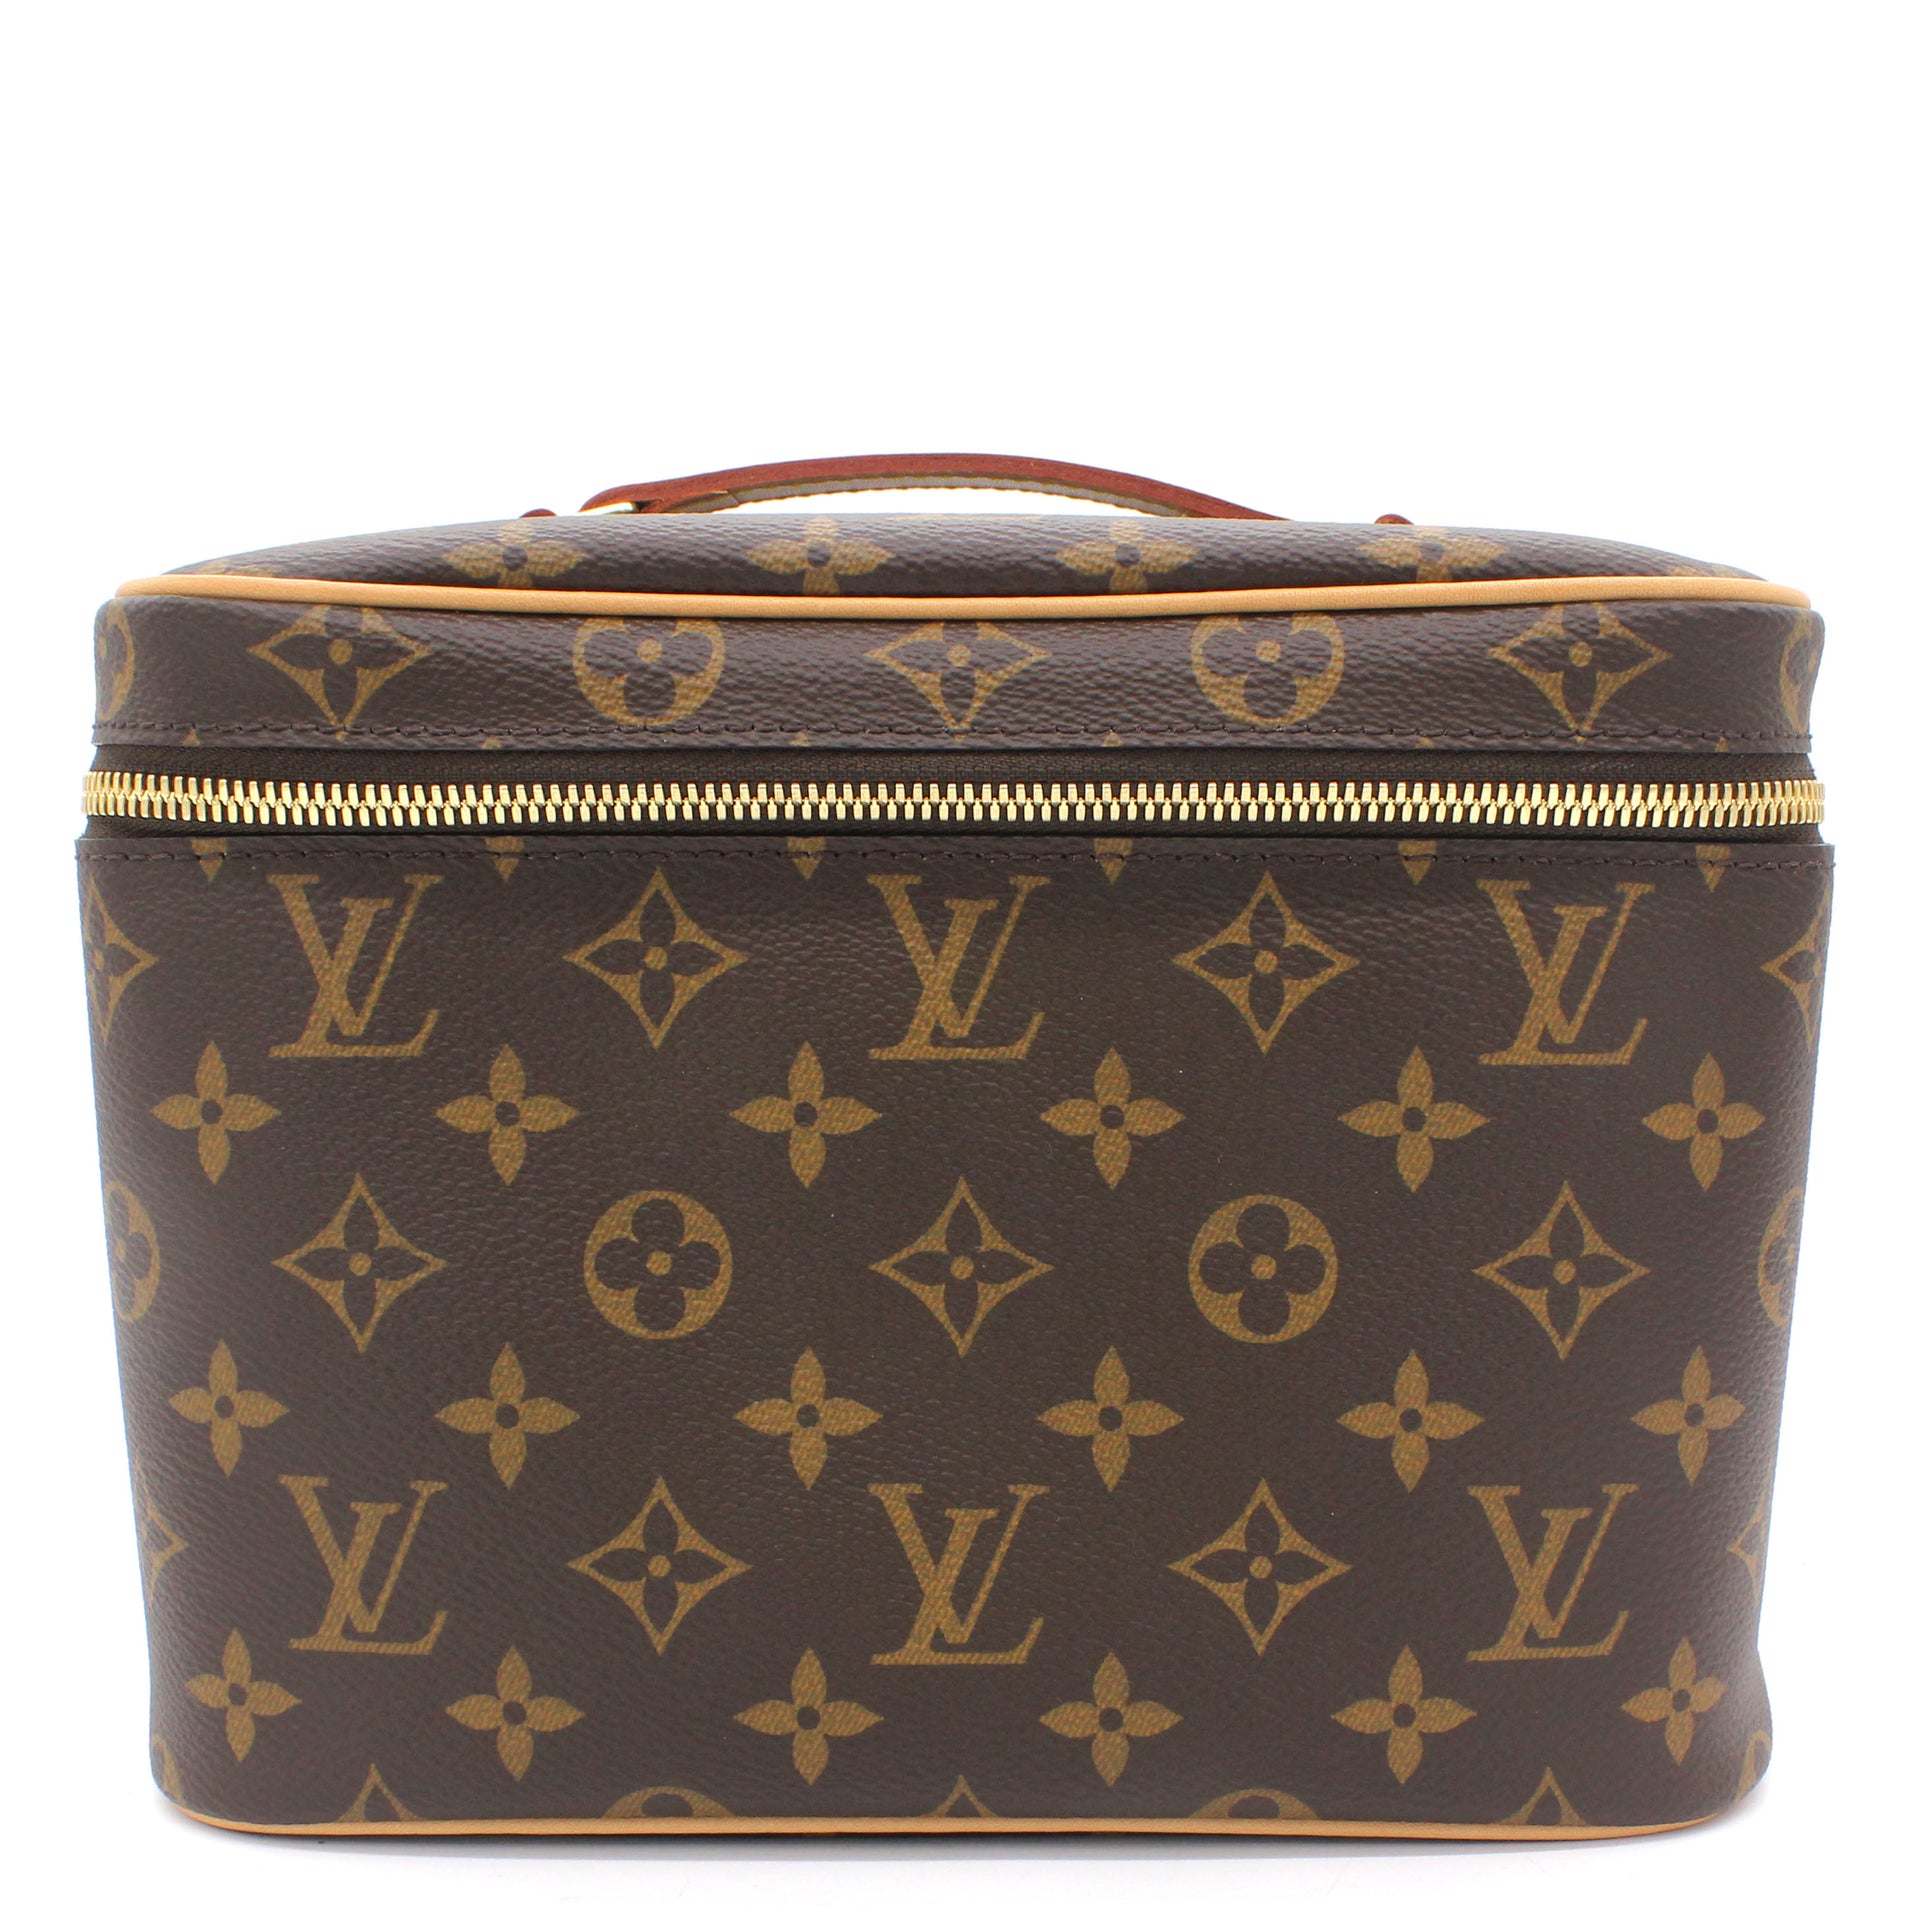 Louis Vuitton Monte Carlo Jewelry Box Design Ideas